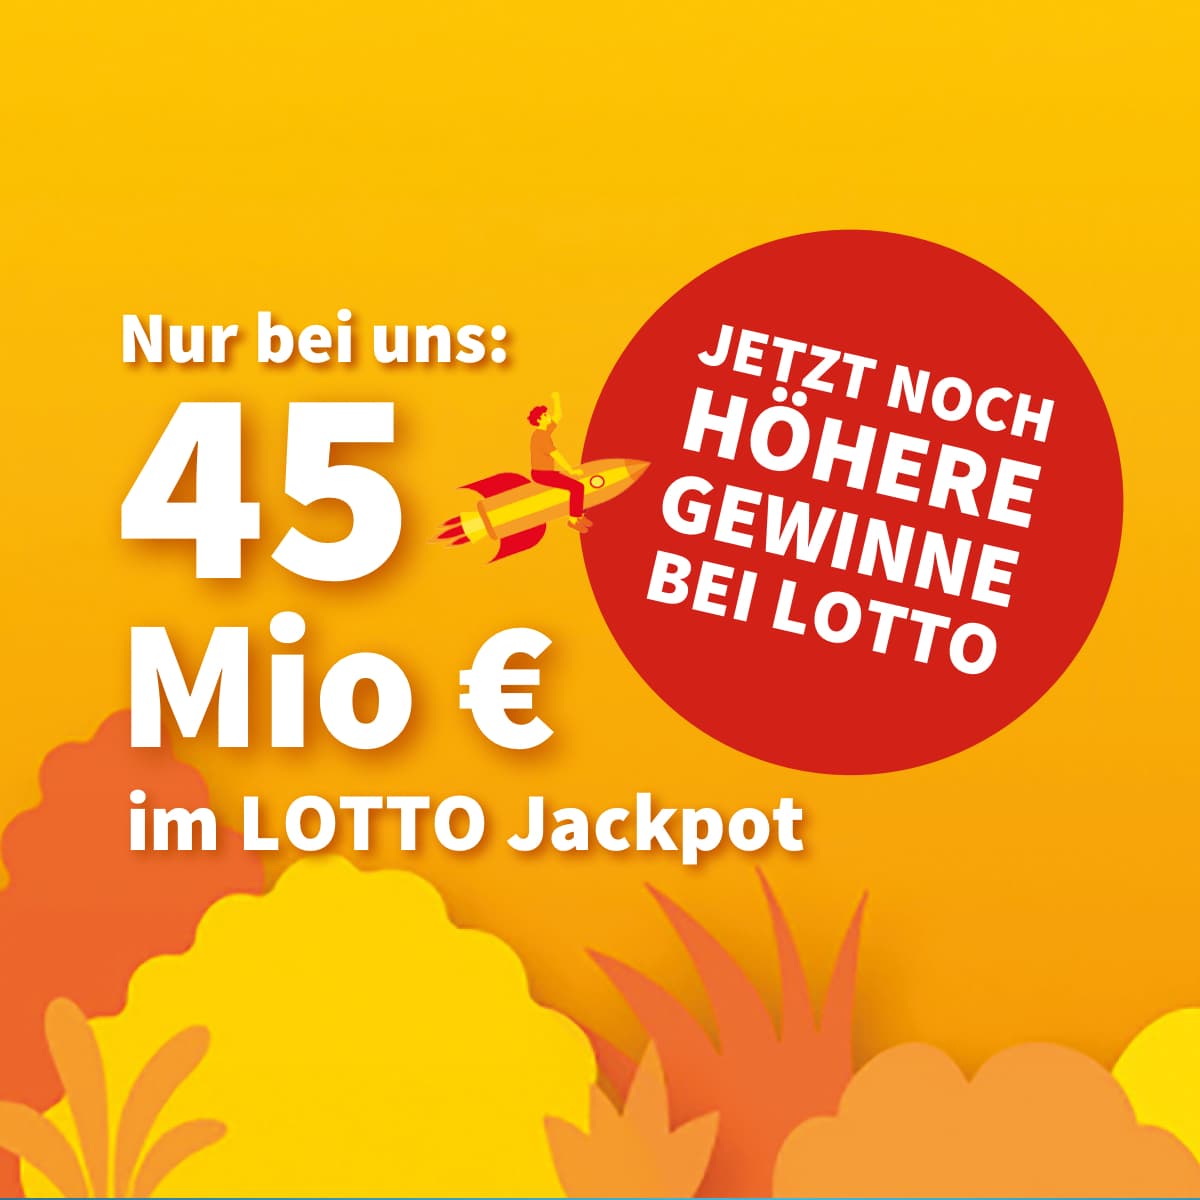 Lotto 6aus49 Jackpot